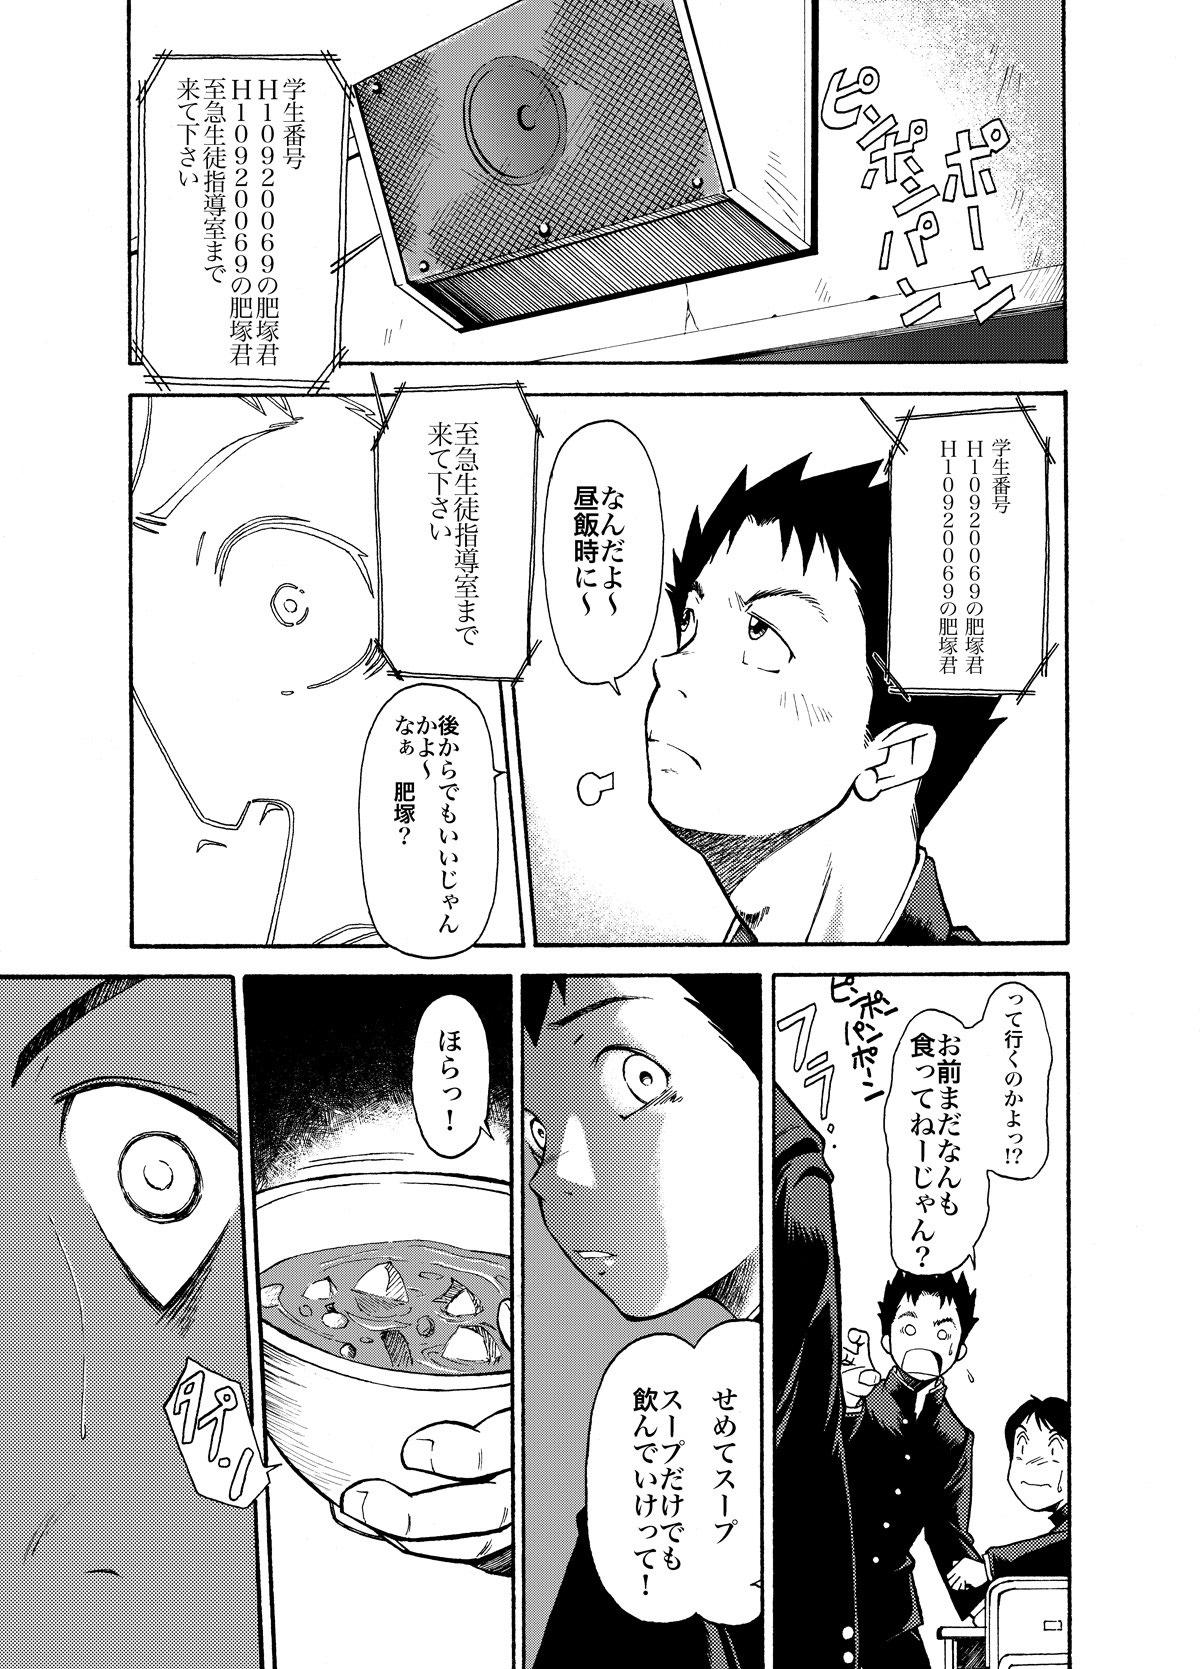 Eating KOWMEIISM - Oumagatoki & Reimei 8teenxxx - Page 9